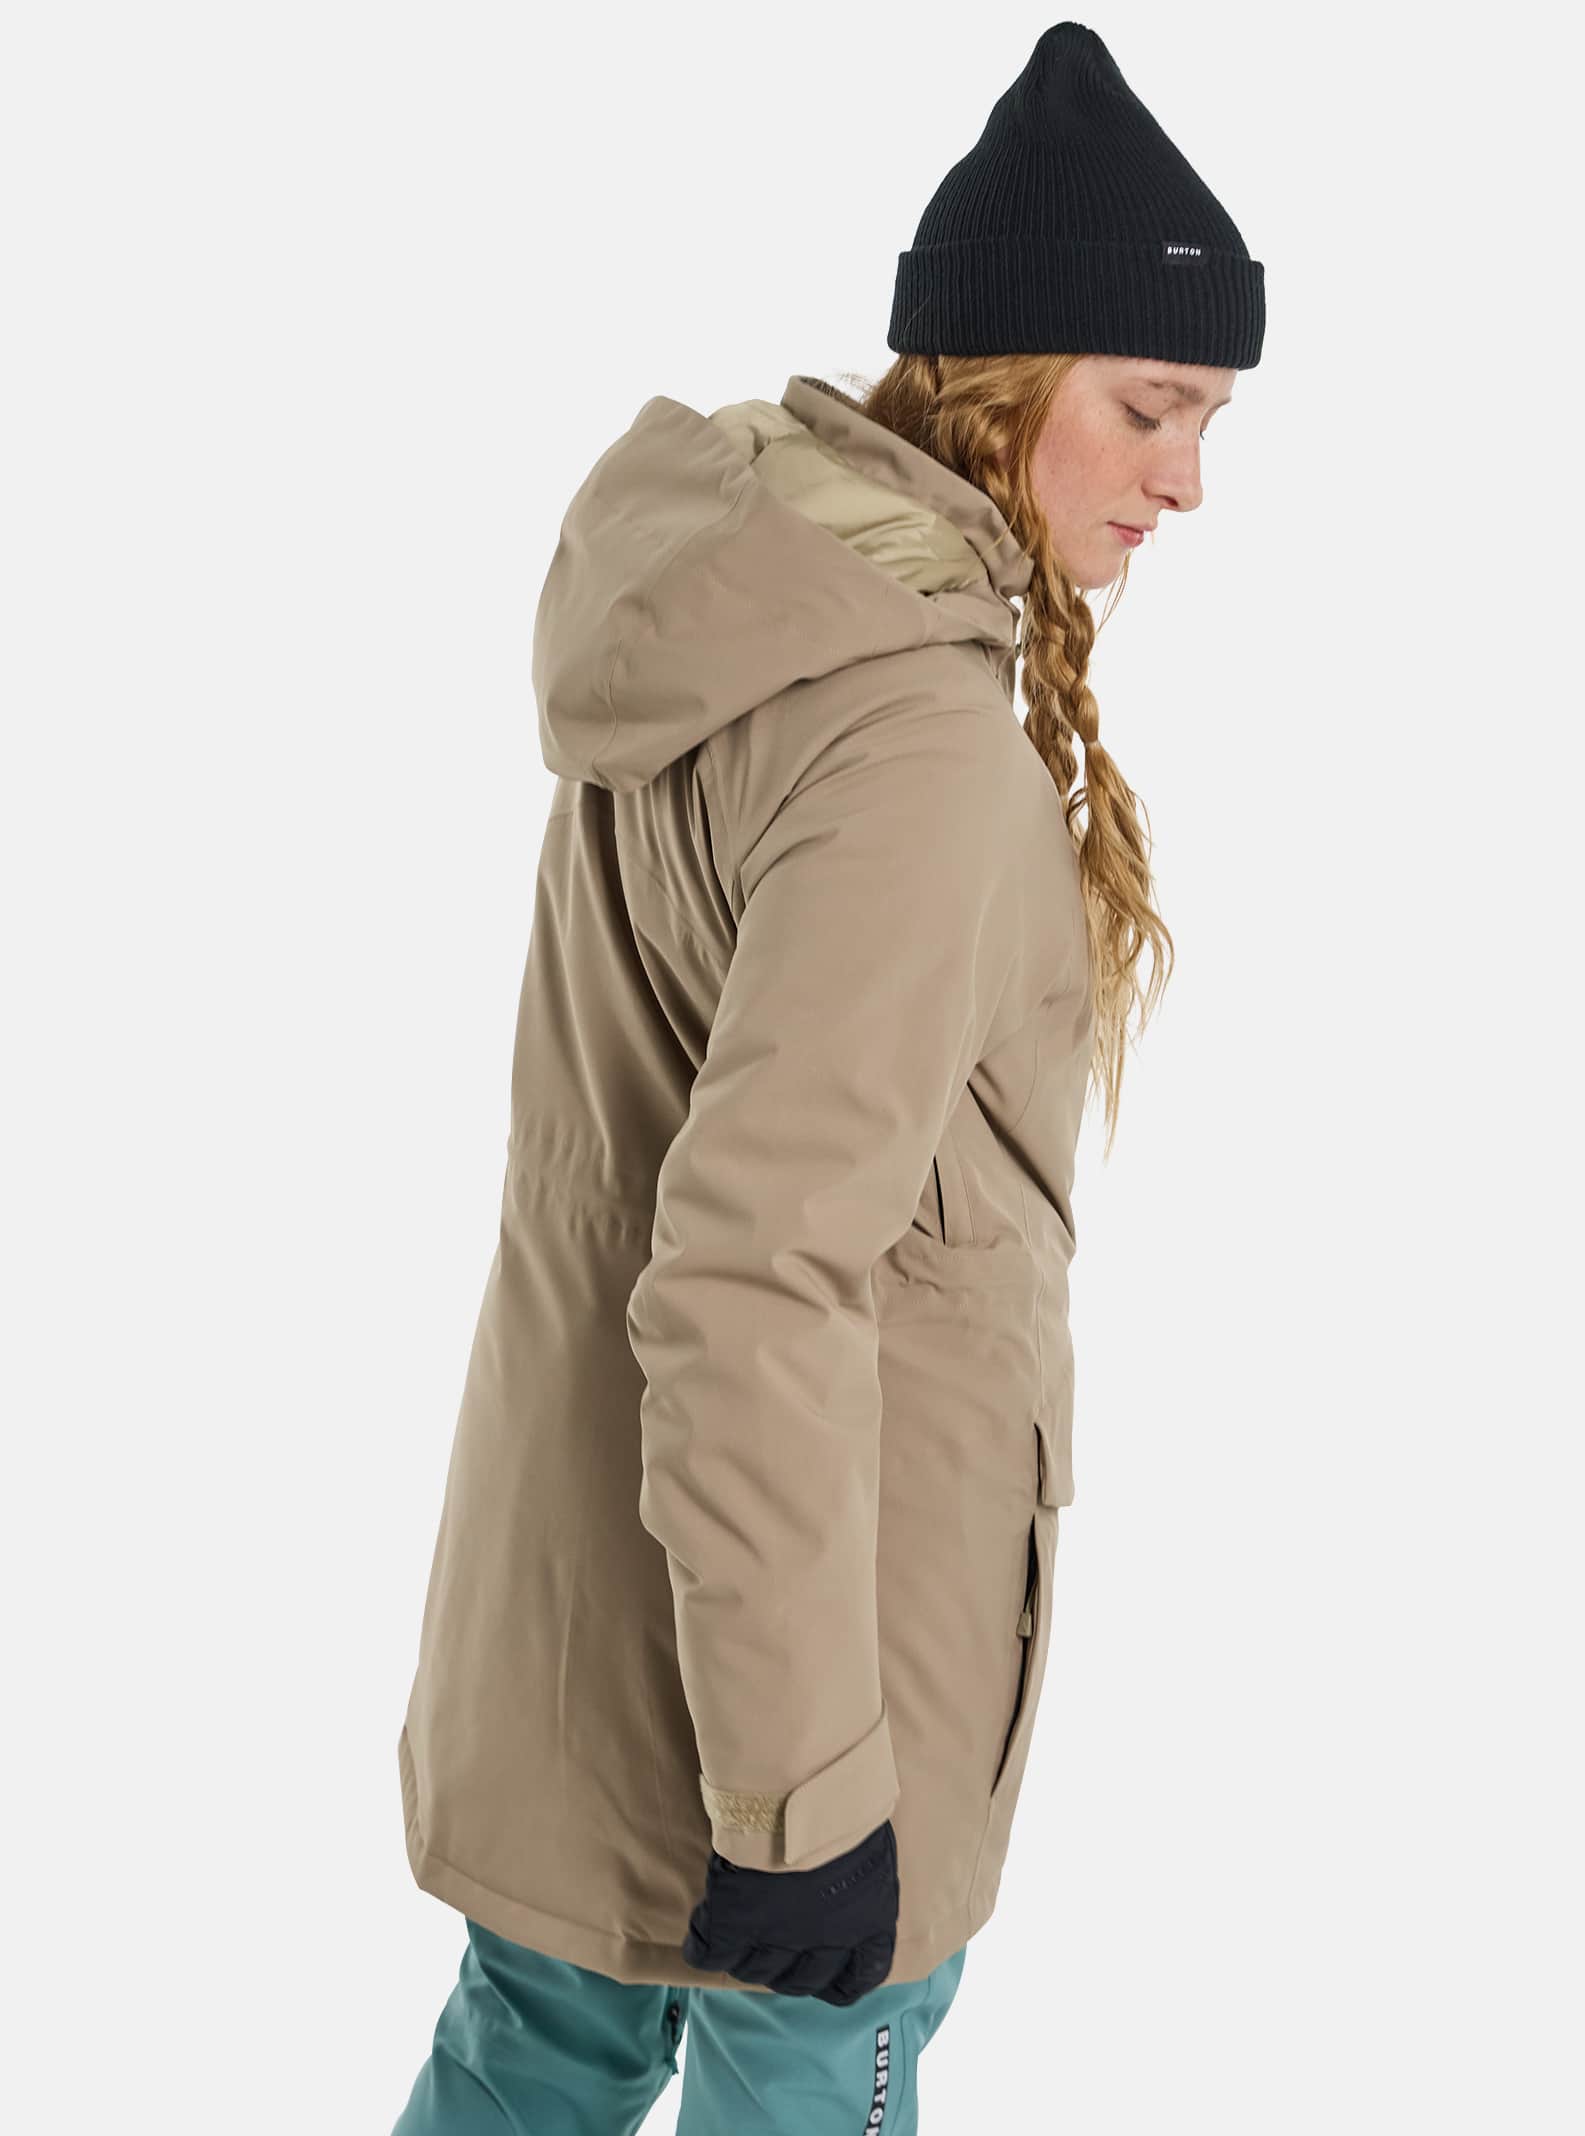 Manteaux et vestes d'hiver de planche à neige de Burton pour femmes | Burton  - Planches à neige CA